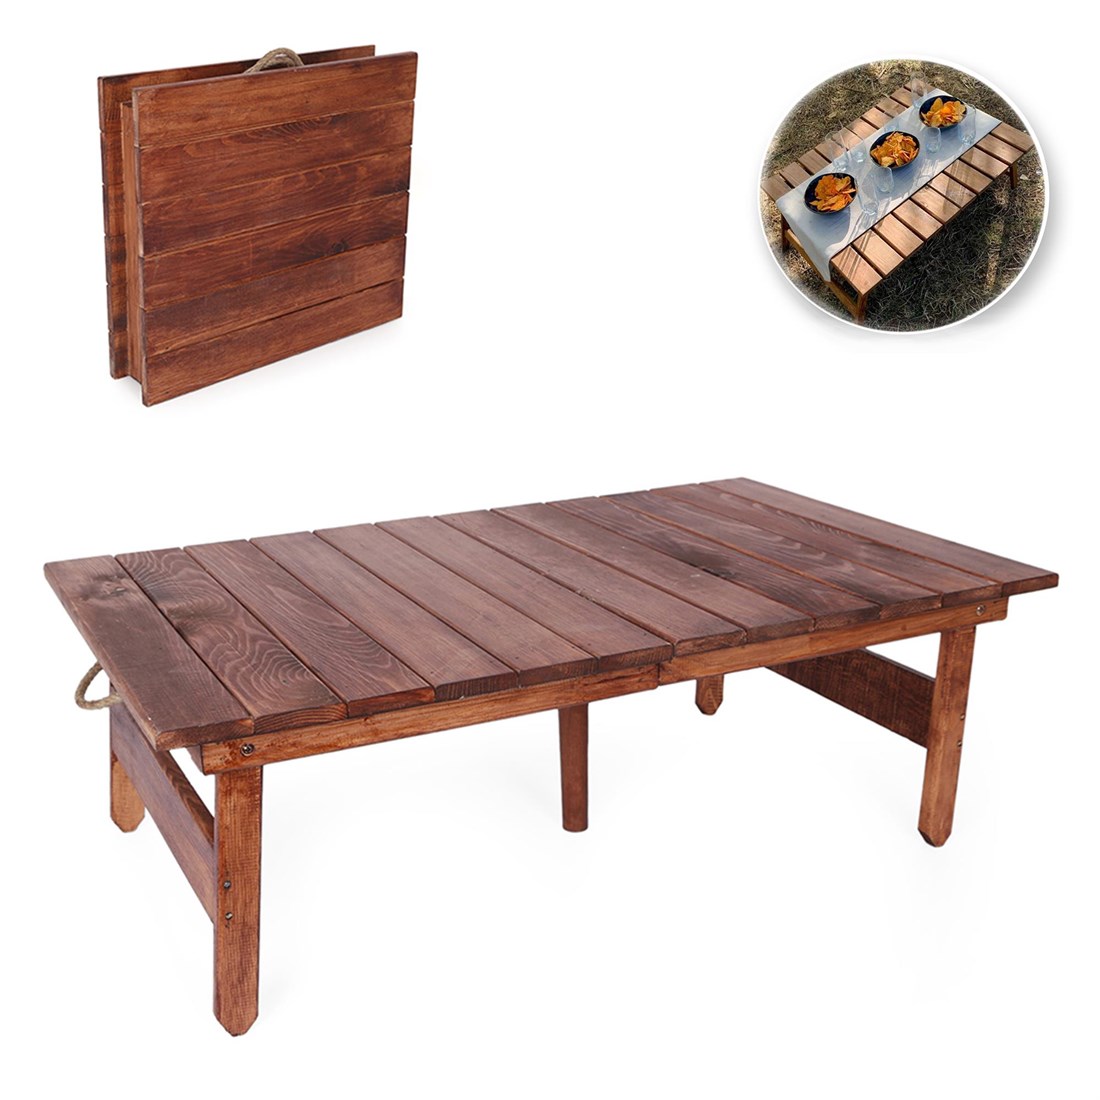 110 cm Koyu Katlanabilir Kamp Masa Seti Bahçe Masası - Balkon Masası - Kamp  Masası - Yer Sofrası